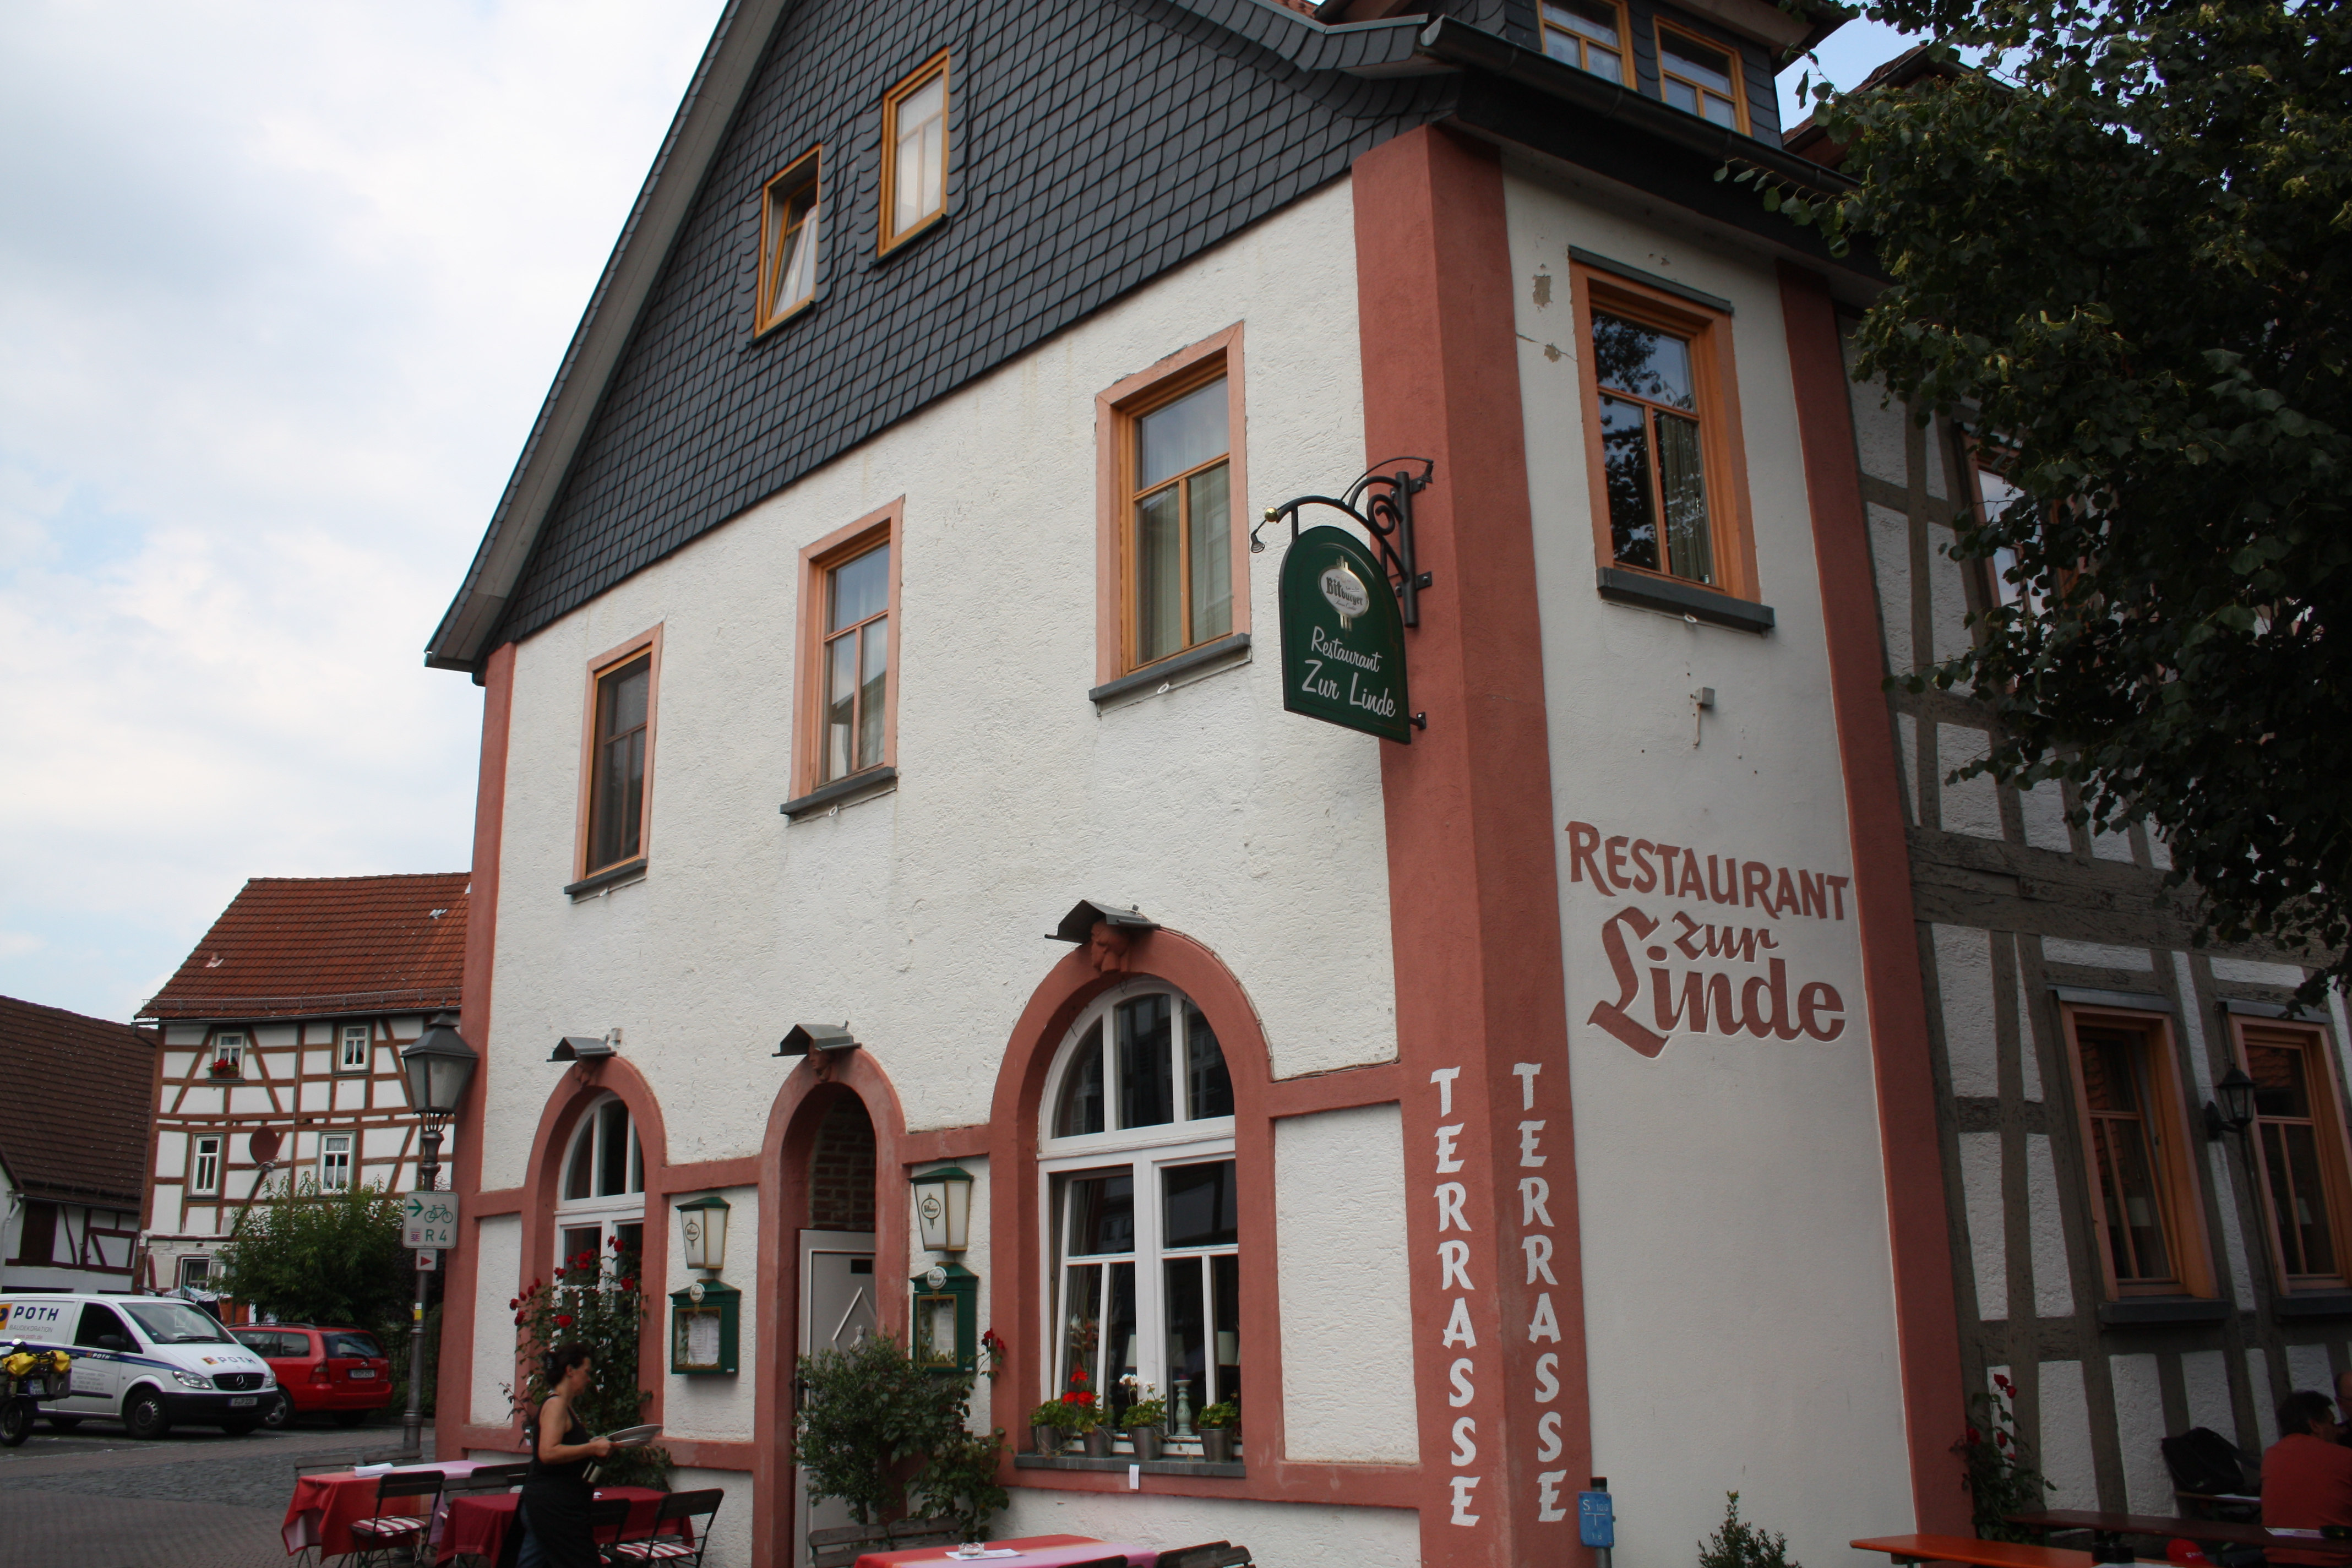 Restaurant Zur Linde in Schotten.
